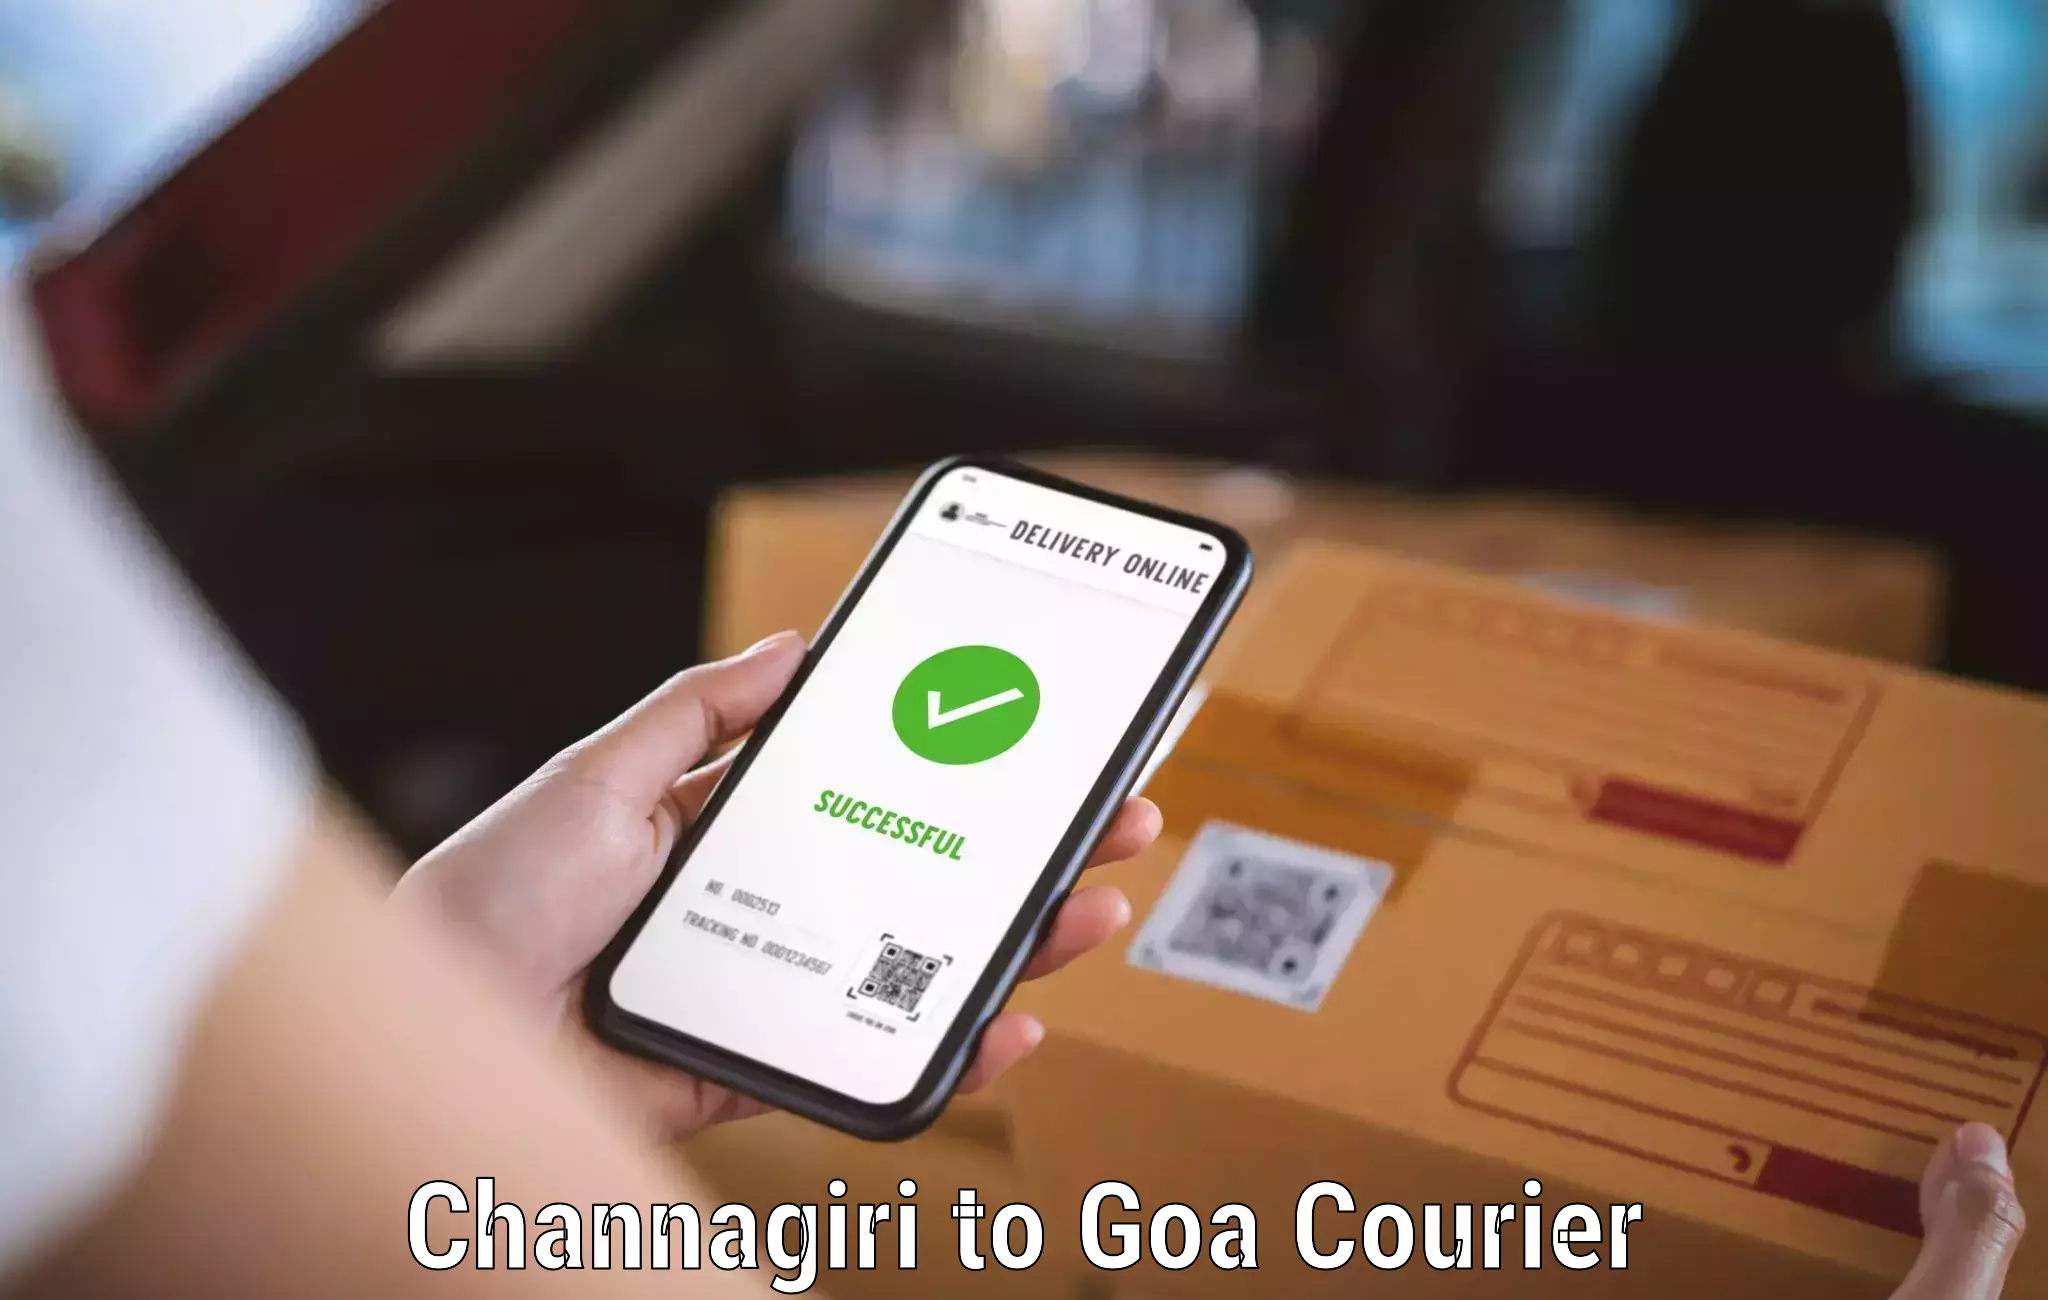 Air courier services Channagiri to NIT Goa